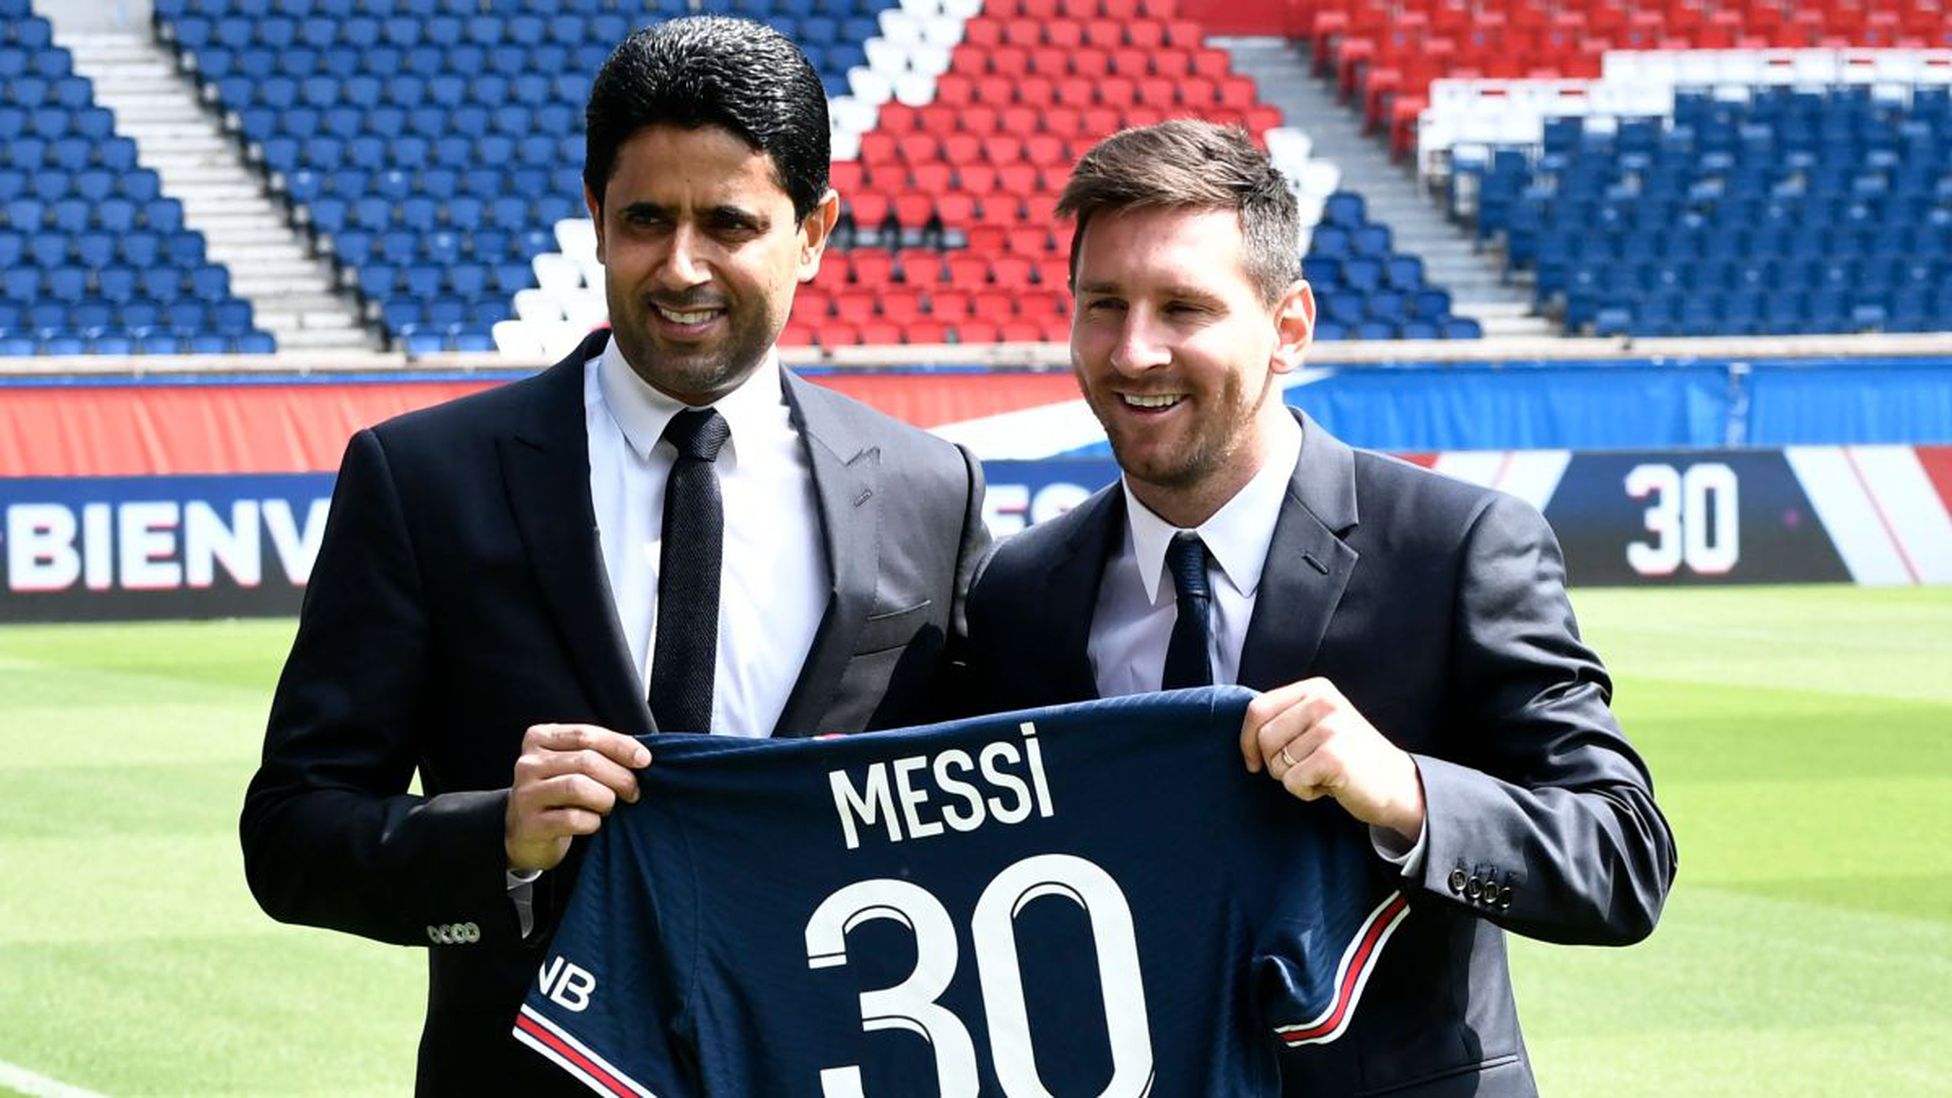 Hợp đồng của Messi với đội bóng nước Pháp chỉ còn vỏn vẹn đến tháng 6/2023